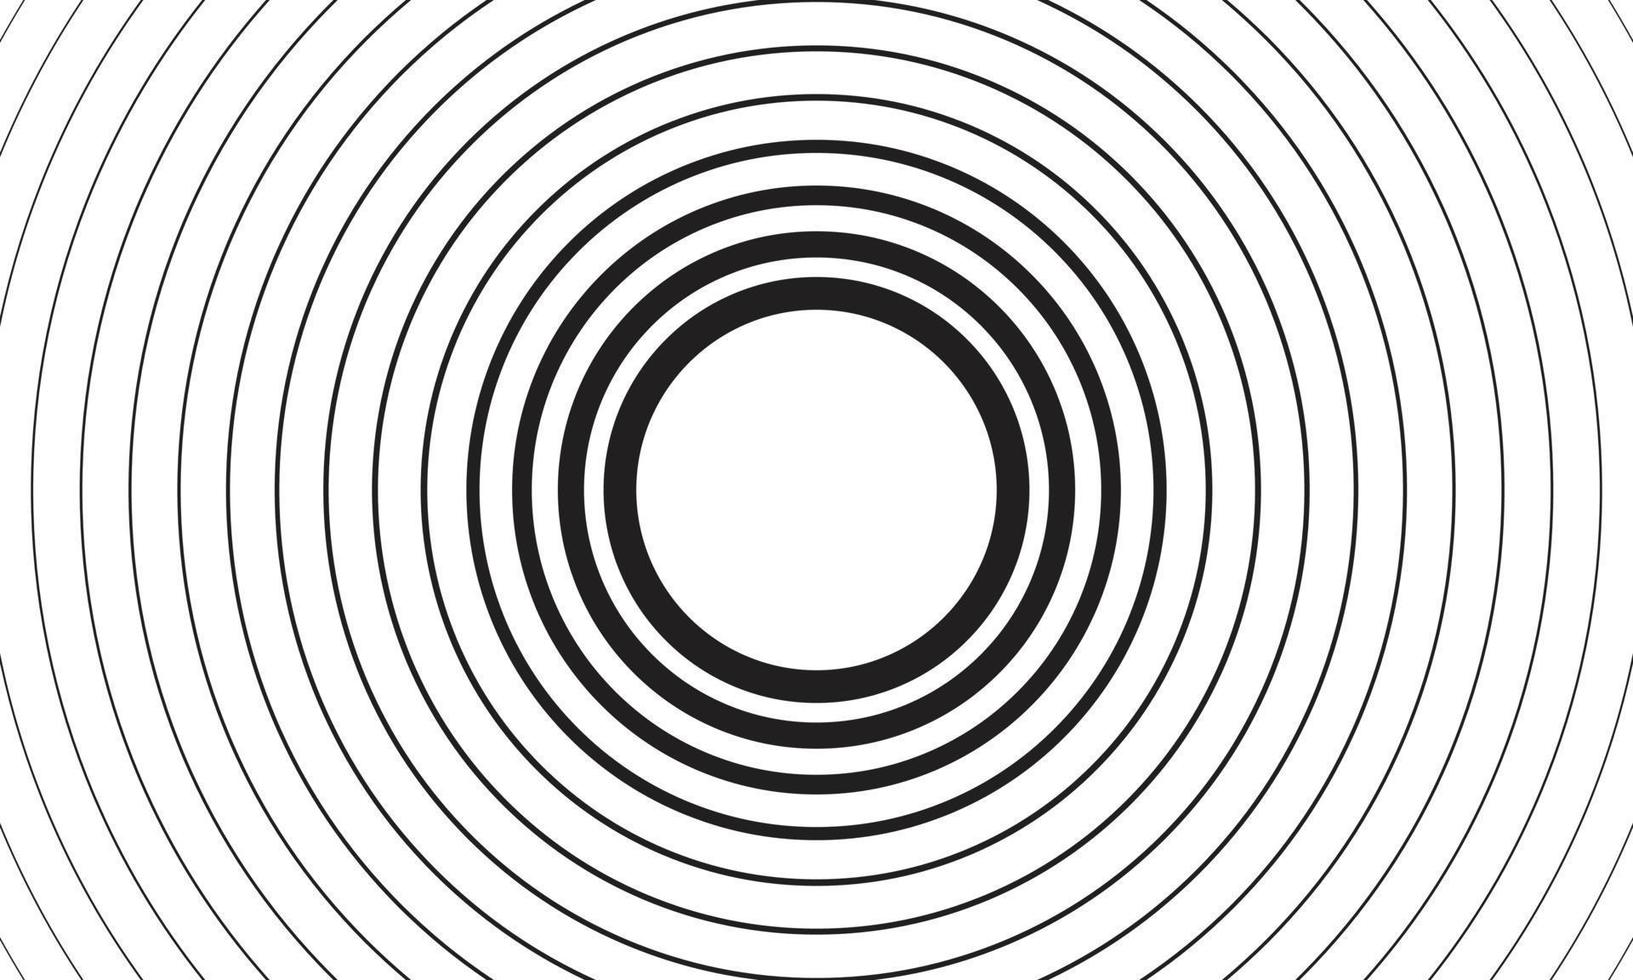 élément radial géométrique. abstrait concentrique, motif géométrique radial fond de cercle de ligne concentrique noir et blanc. concept de lavage et de tempête ou illustration vectorielle simple de l'effet d'entraînement vecteur